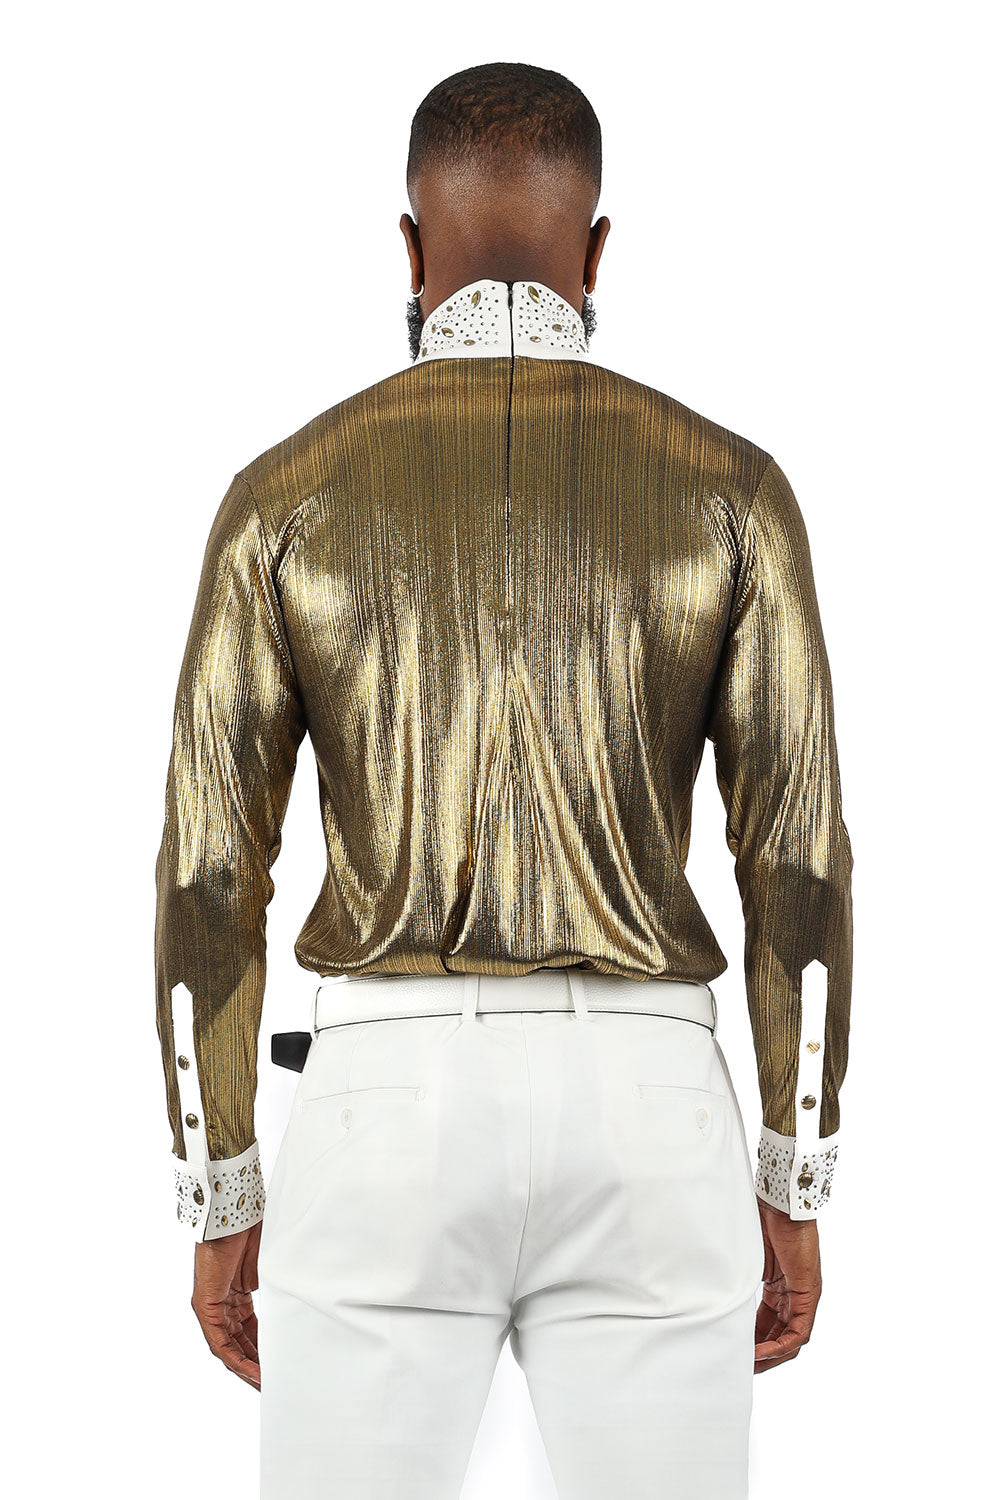 BARABAS Men's Luxury Rhinestone Long Sleeve Turtle Neck shirt 3MT04 White and Gold